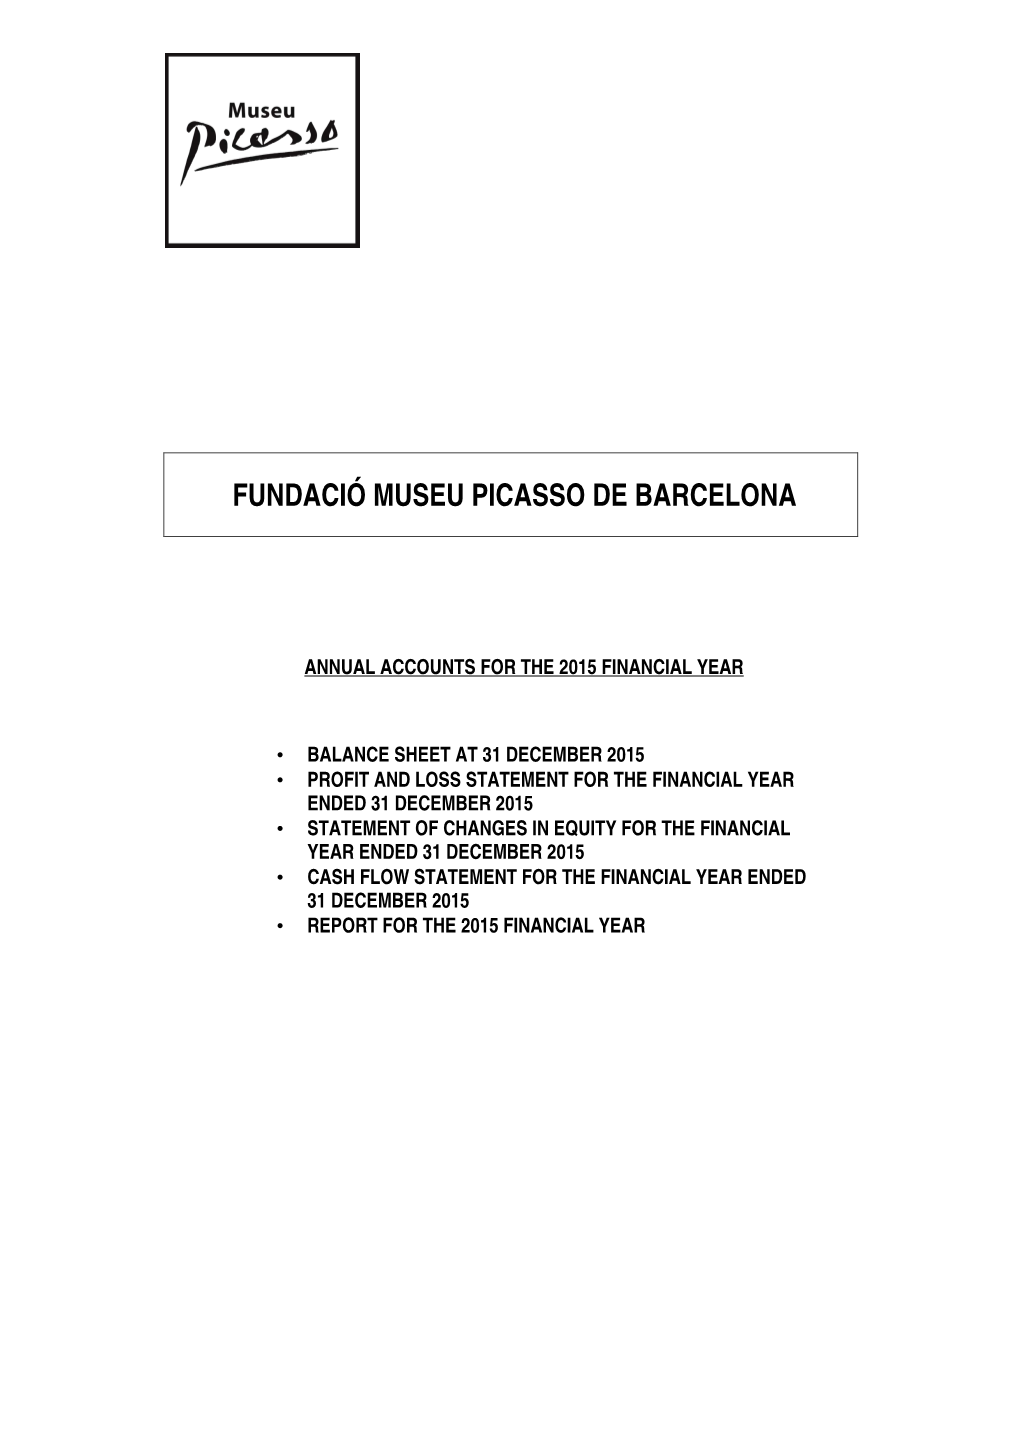 Fundació Museu Picasso De Barcelona